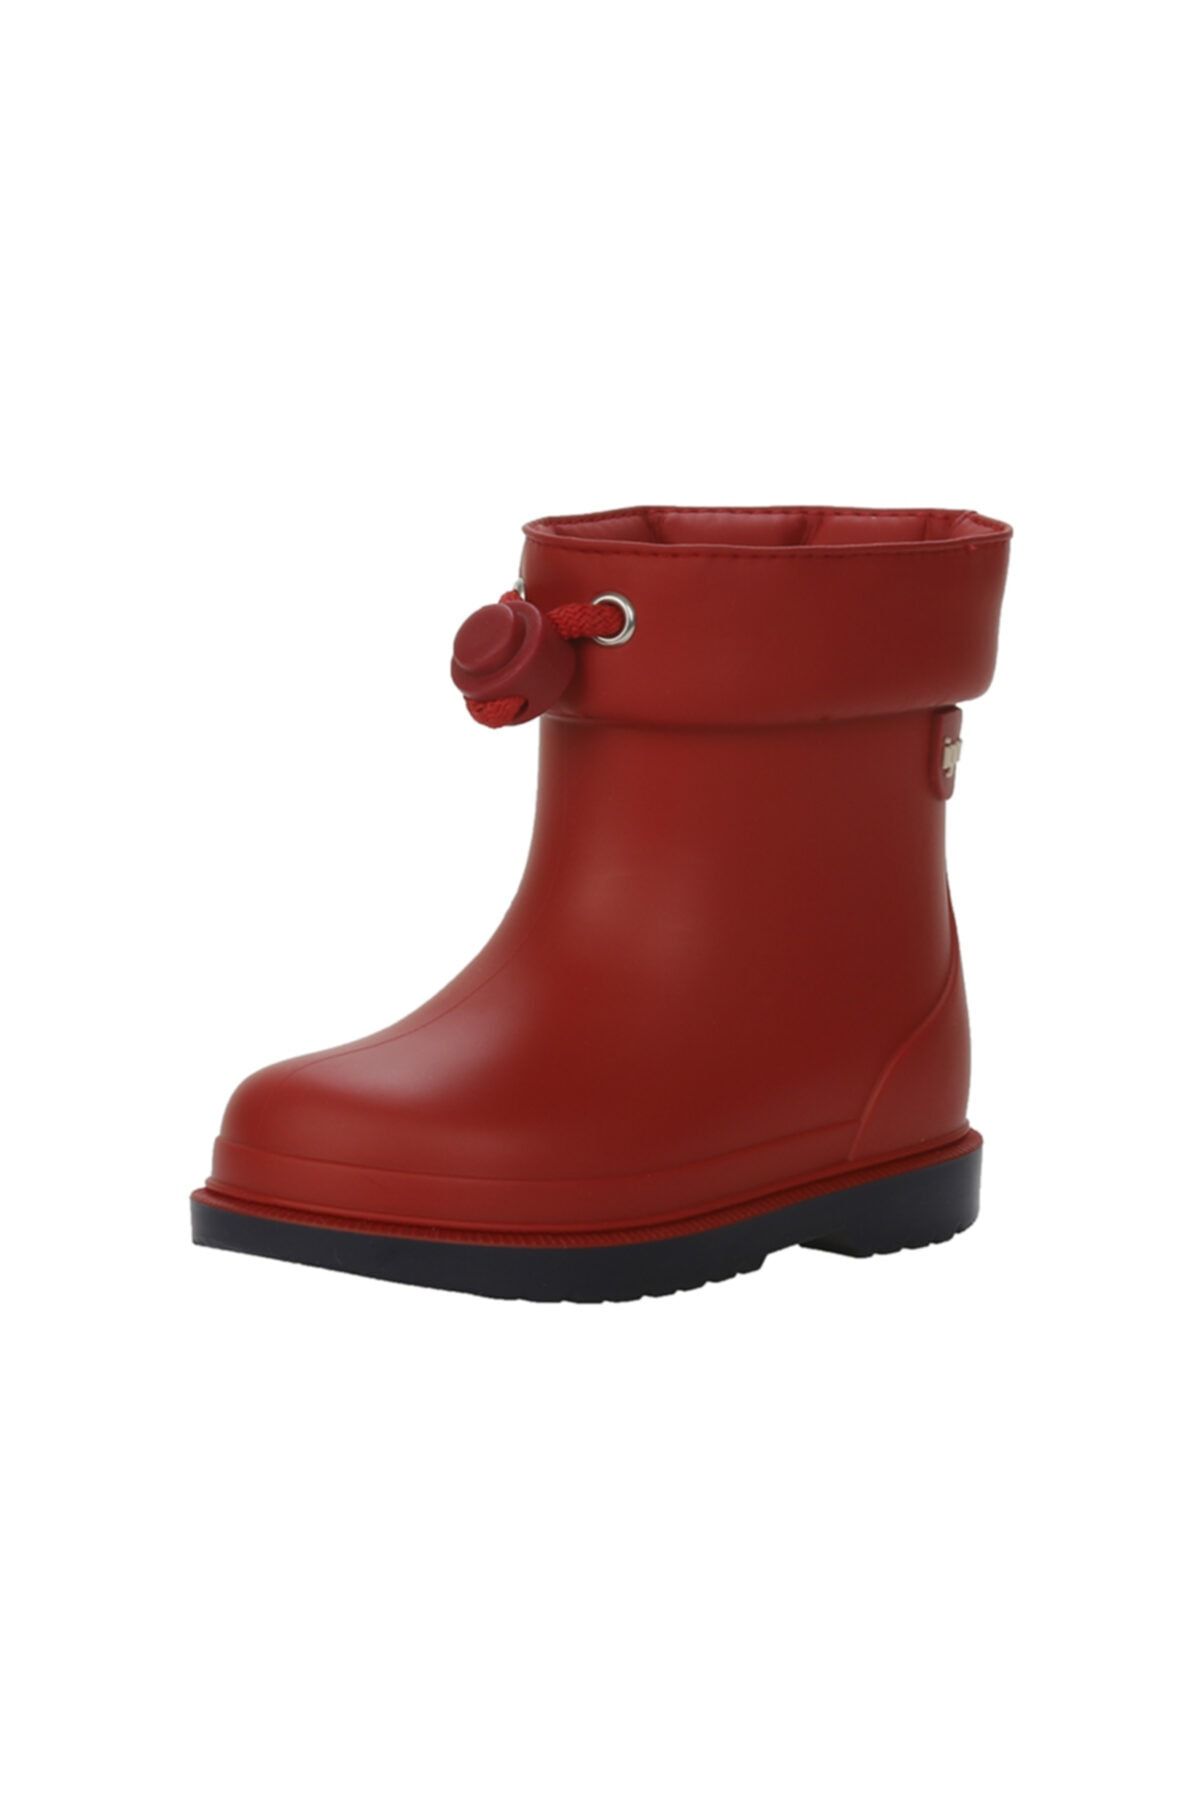 IGOR W10211 Bimbi Bicolor Çocuk Kırmızı Yağmur Çizmesi